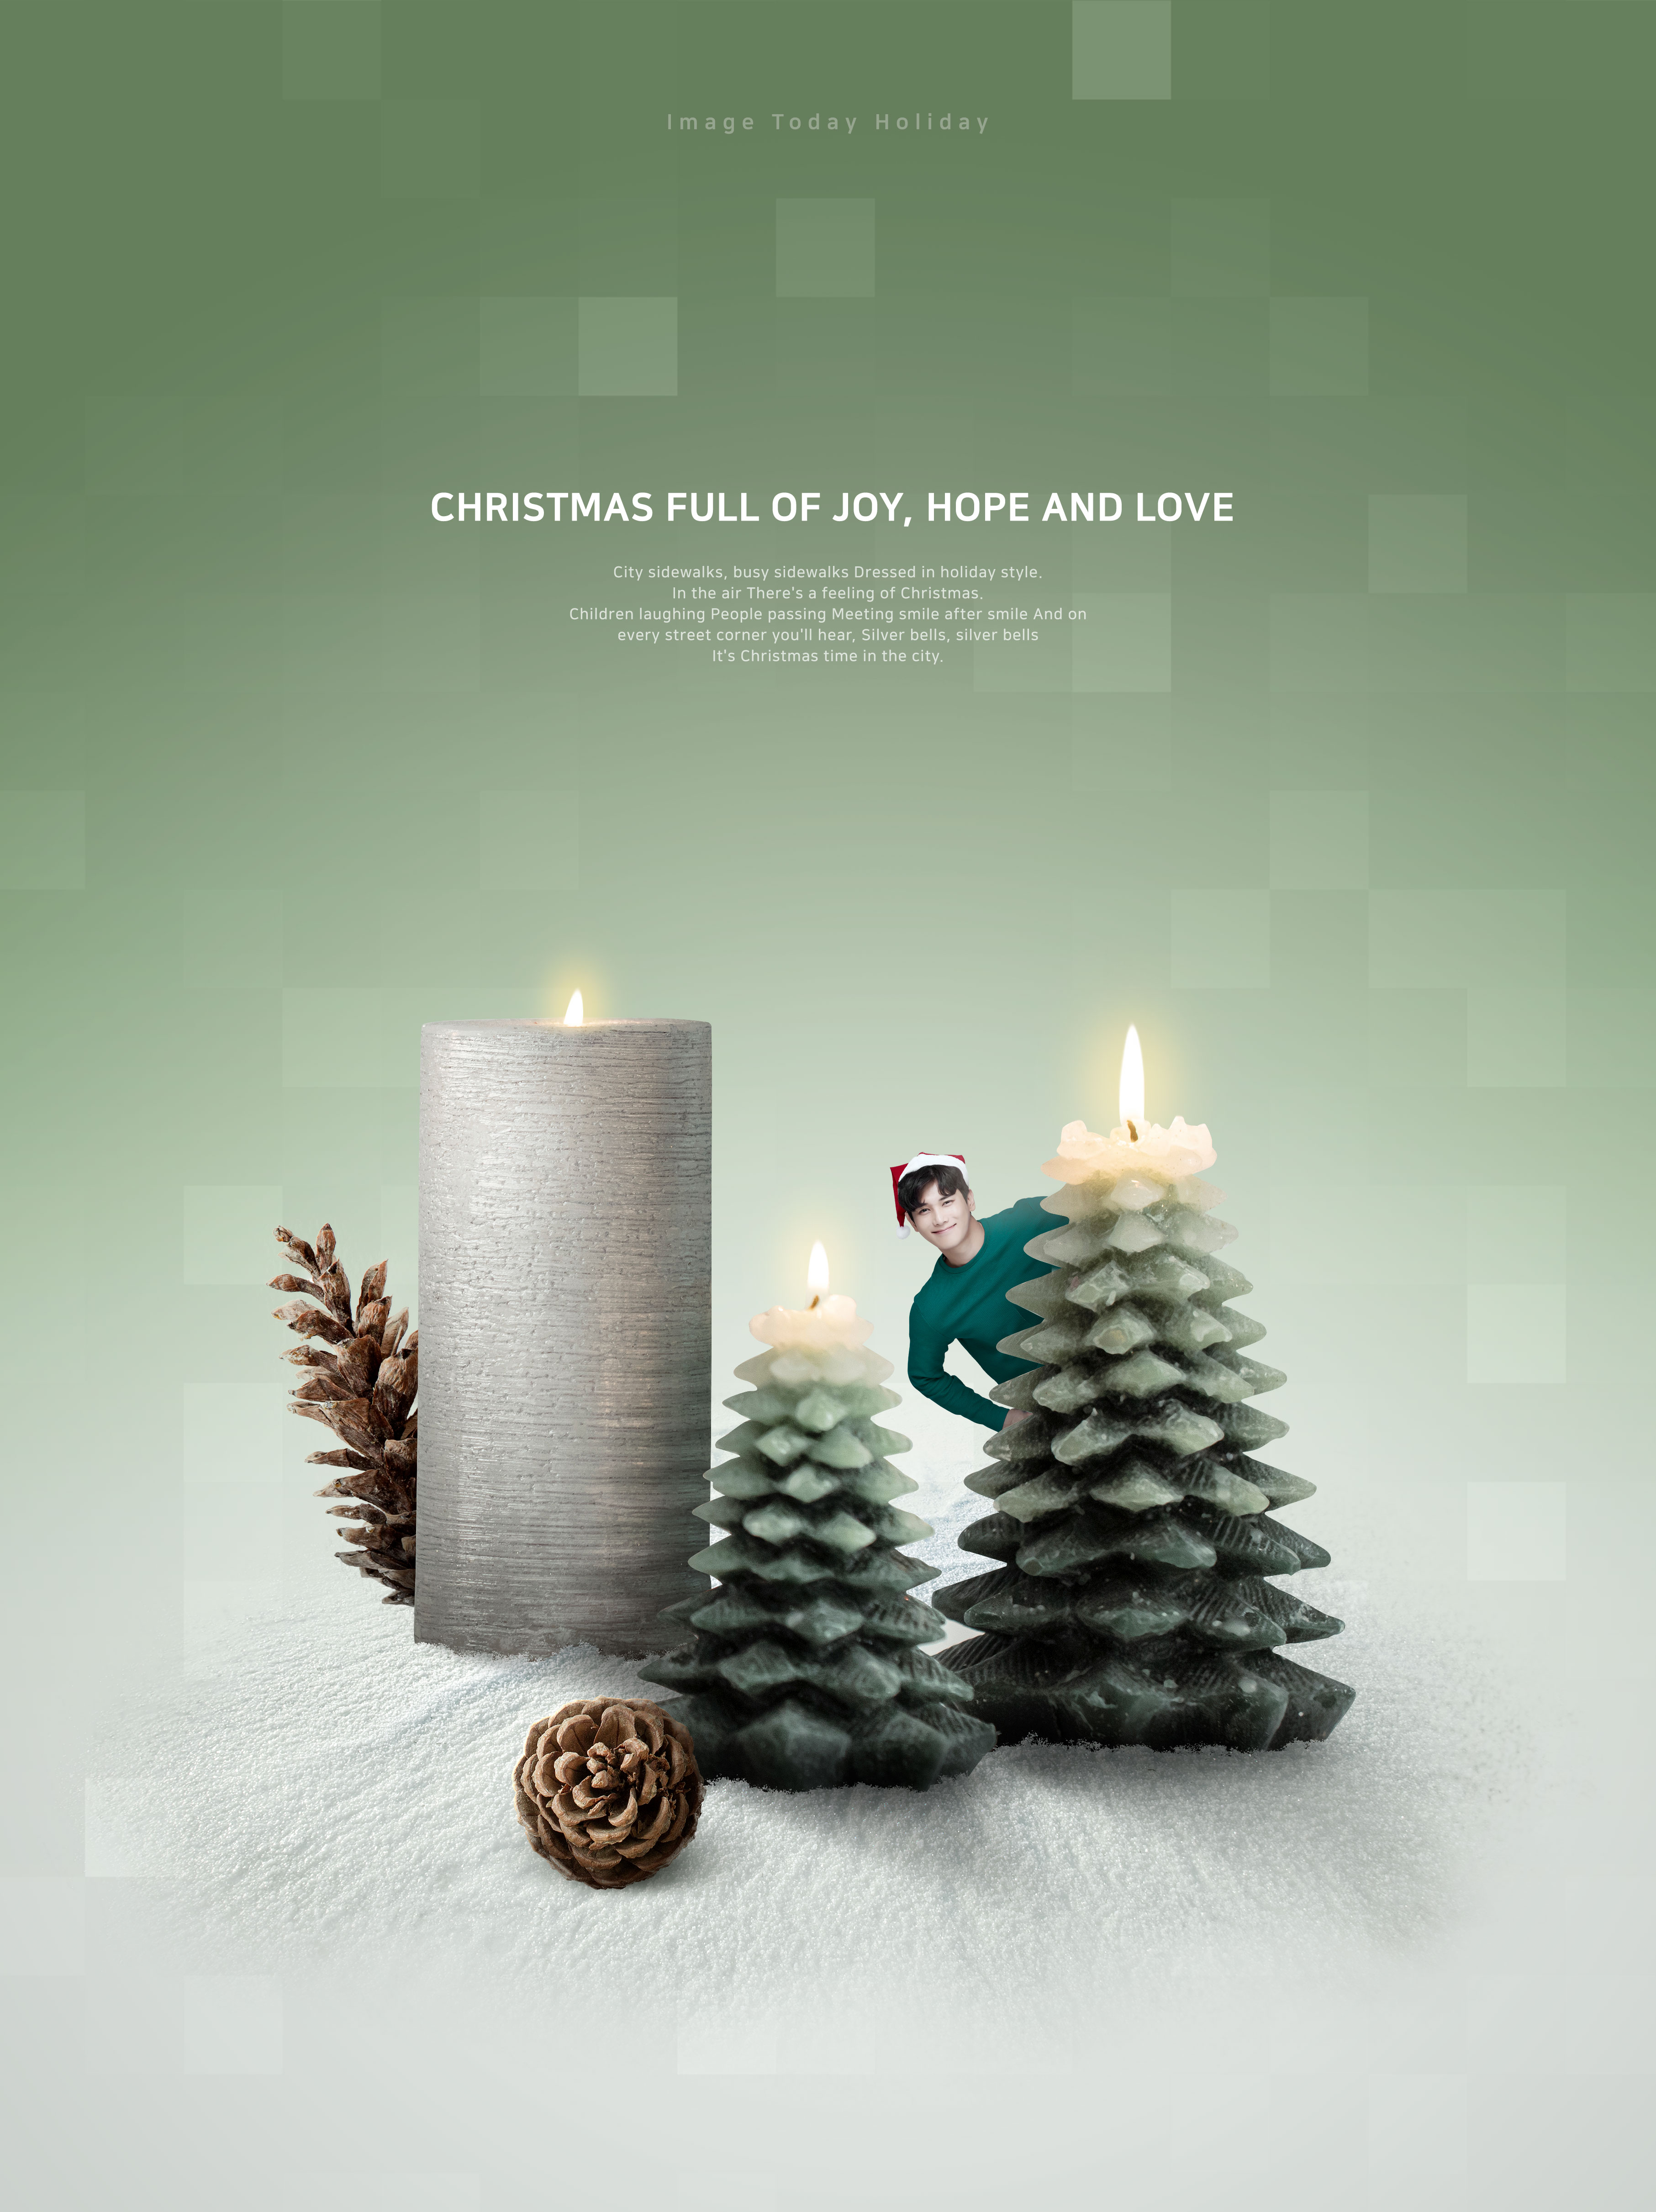 创意圣诞蜡烛树圣诞节主题海报模板psd素材插图